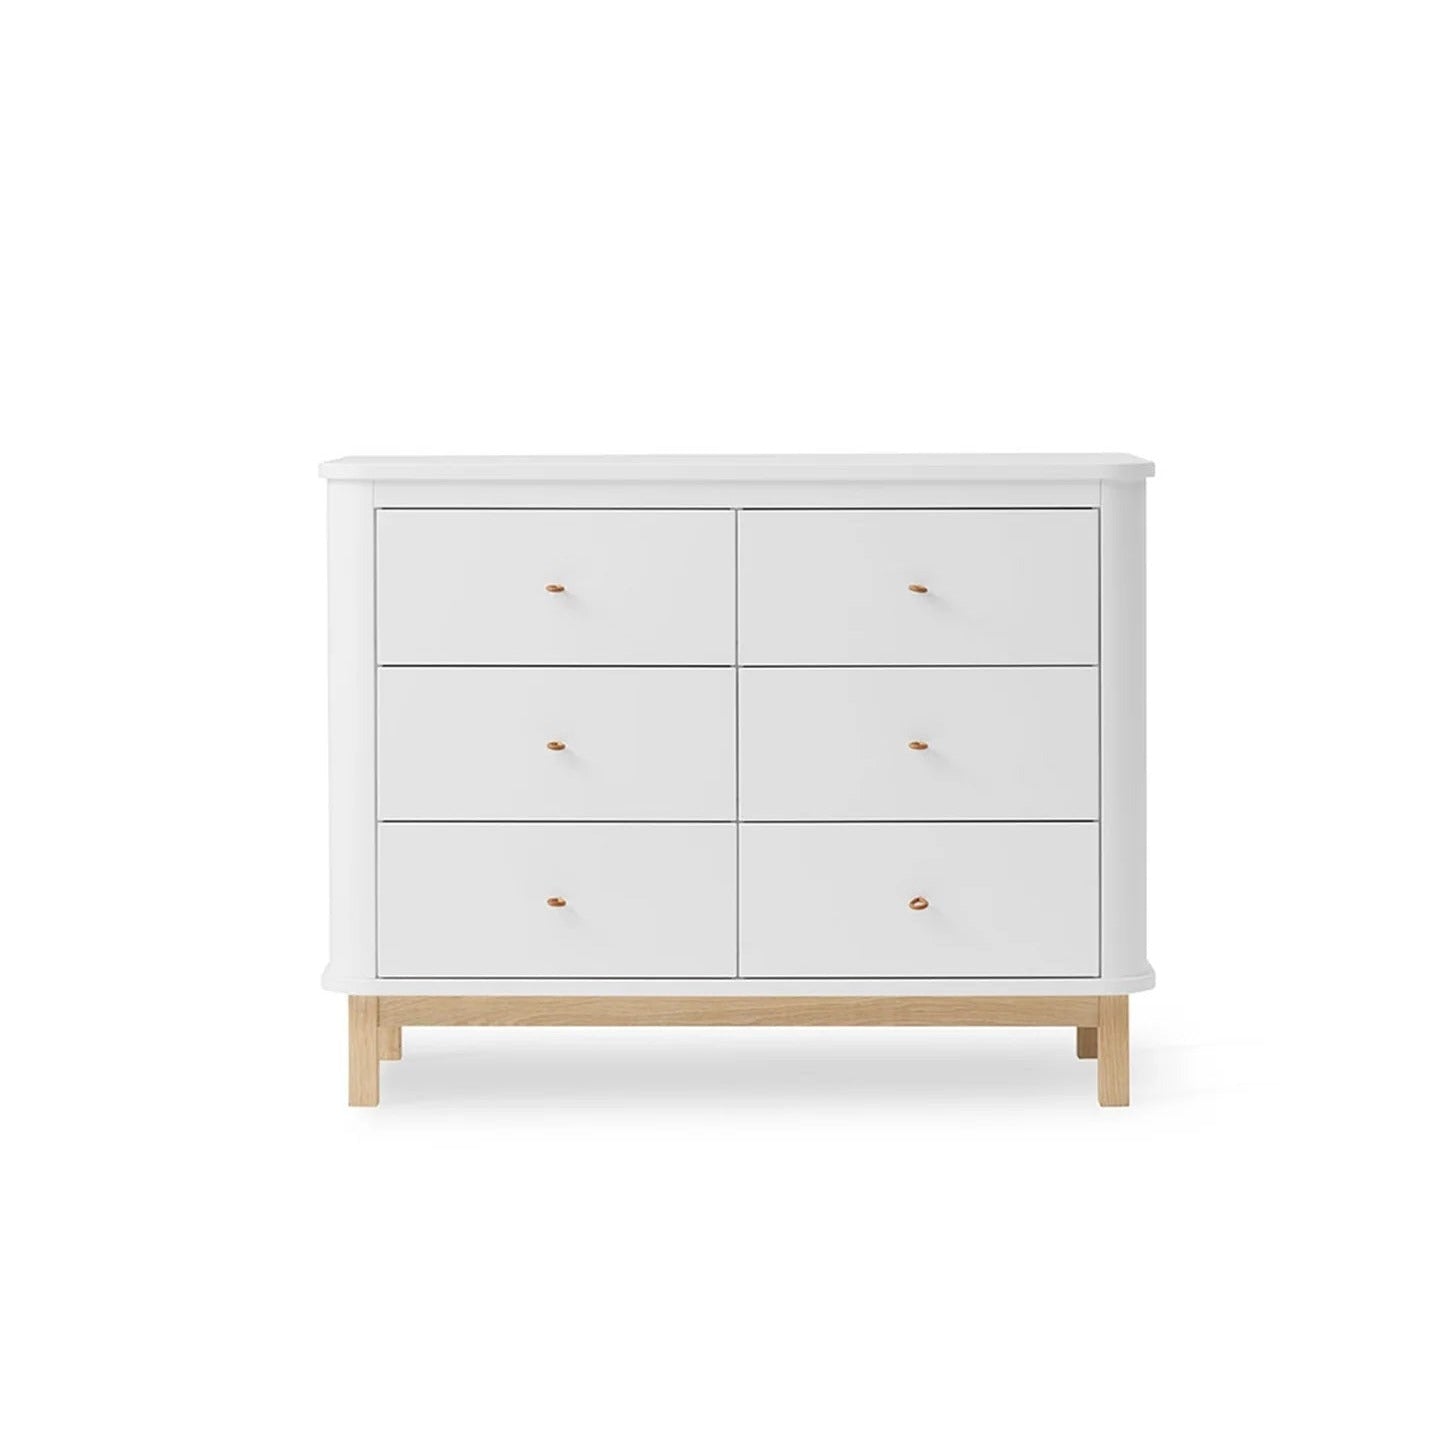 Oliver Furniture Wood Dresser - 6 Drawers - White/Oak